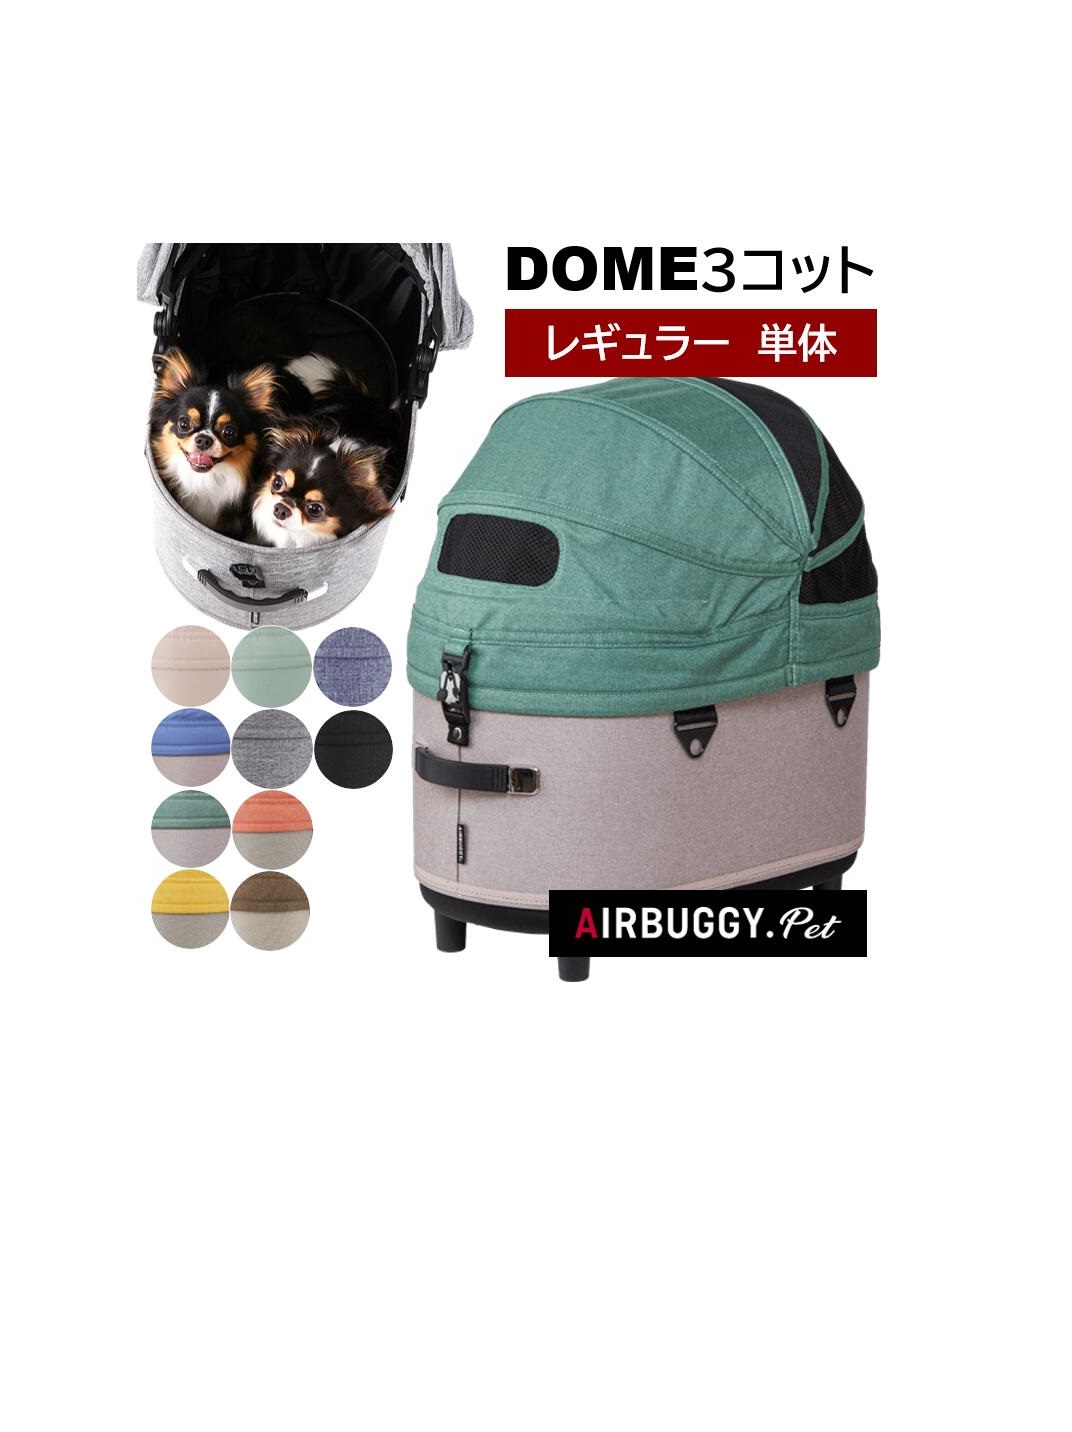 メーカー直送 エアバギ― ドーム コット 単体 レギュラー AIRBUGGY COT 犬 猫 ペットカート 正規品アイキャッチ画像